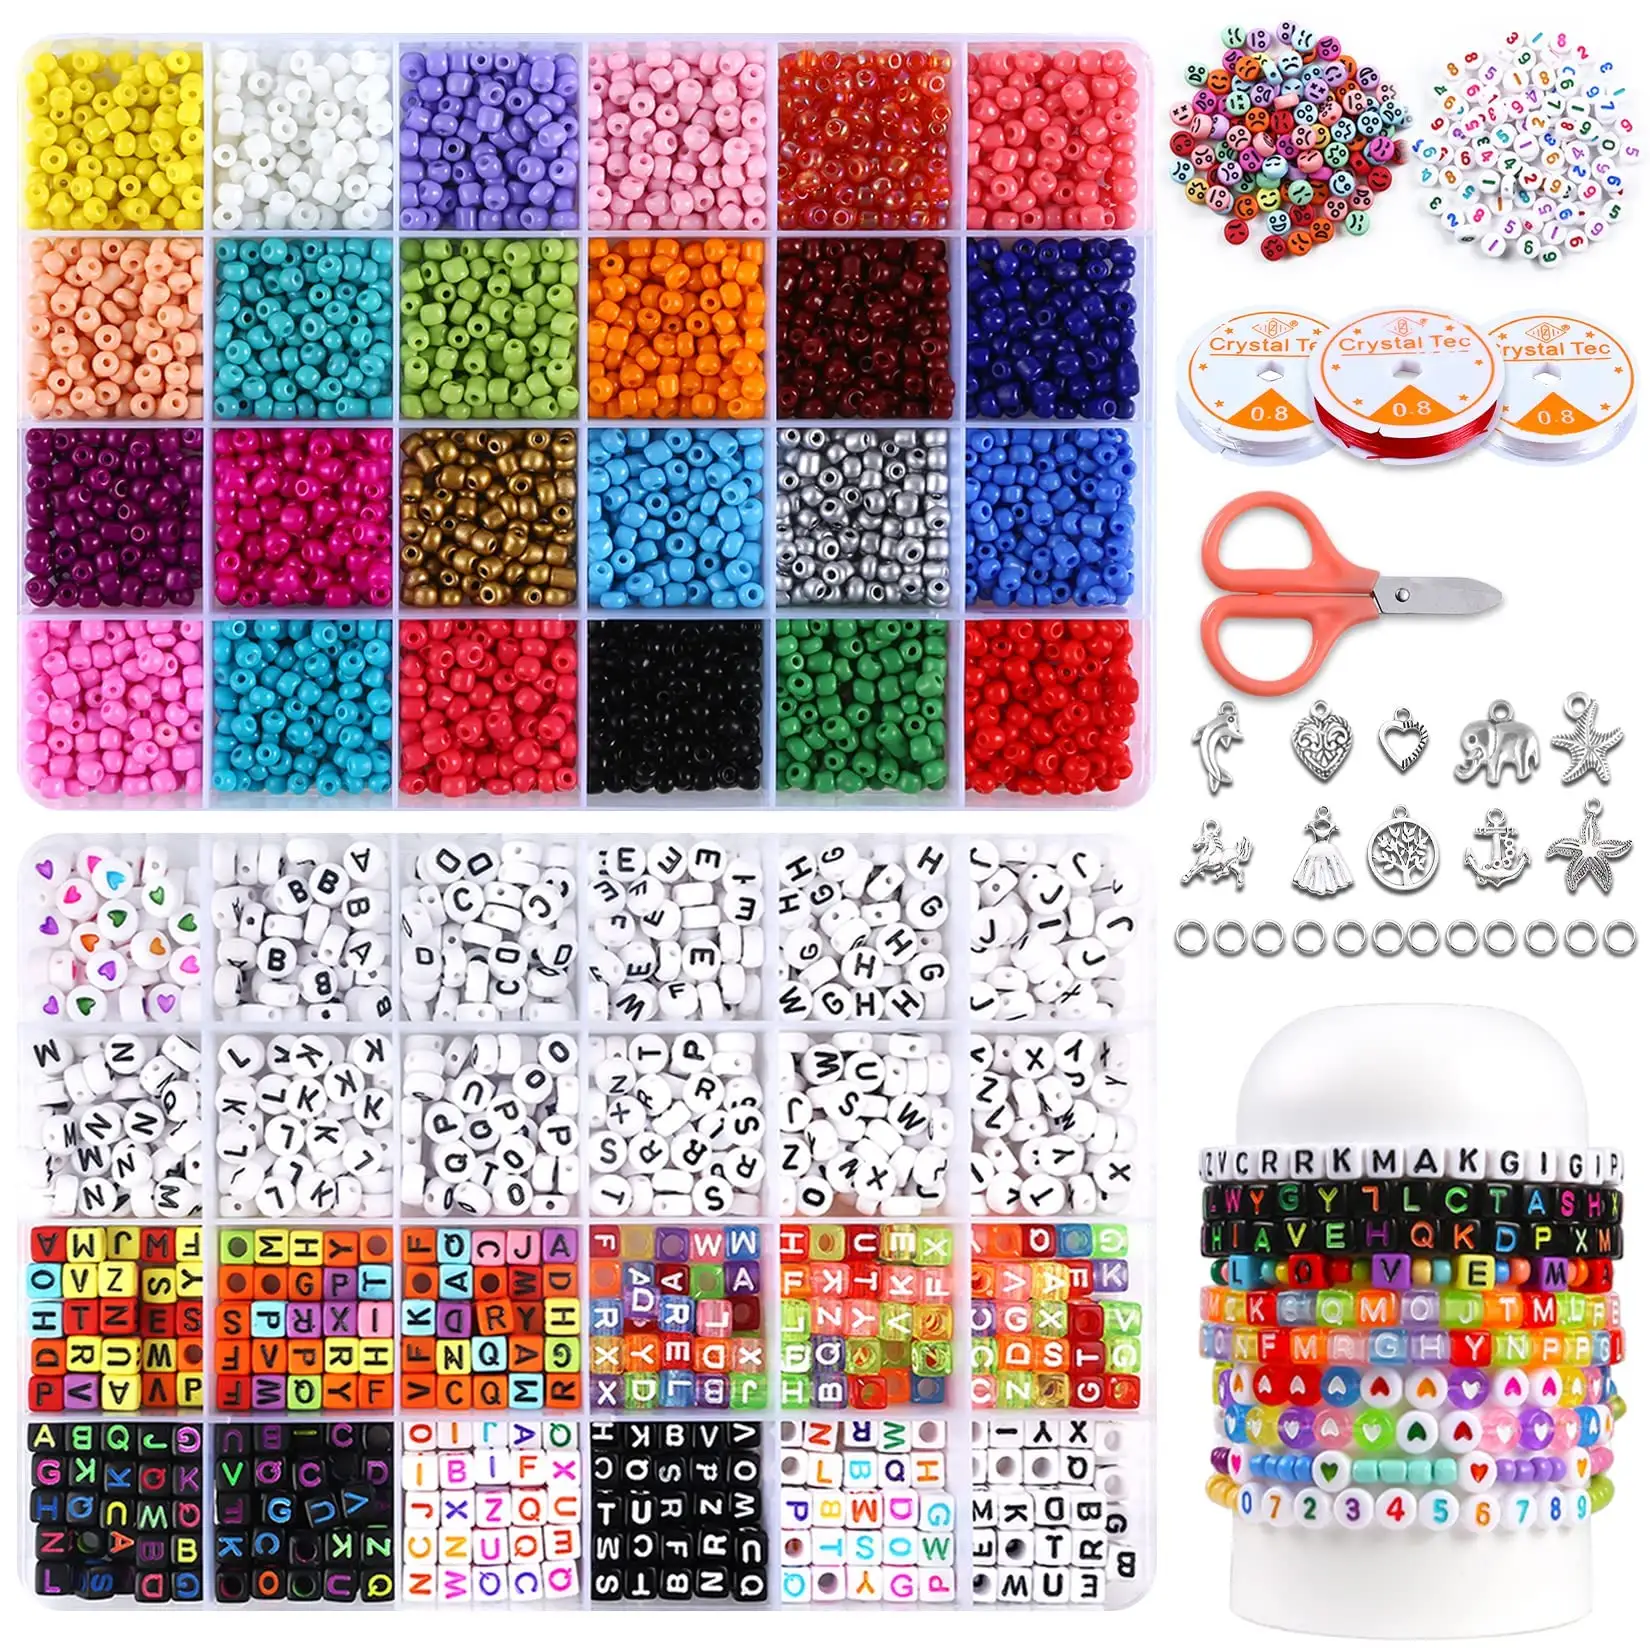 Toowl Custom Multiple Patterns materiale 3800 pezzi 4mm perline di vetro e 1200 pezzi di perline per bracciali fai da te creazione di gioielli